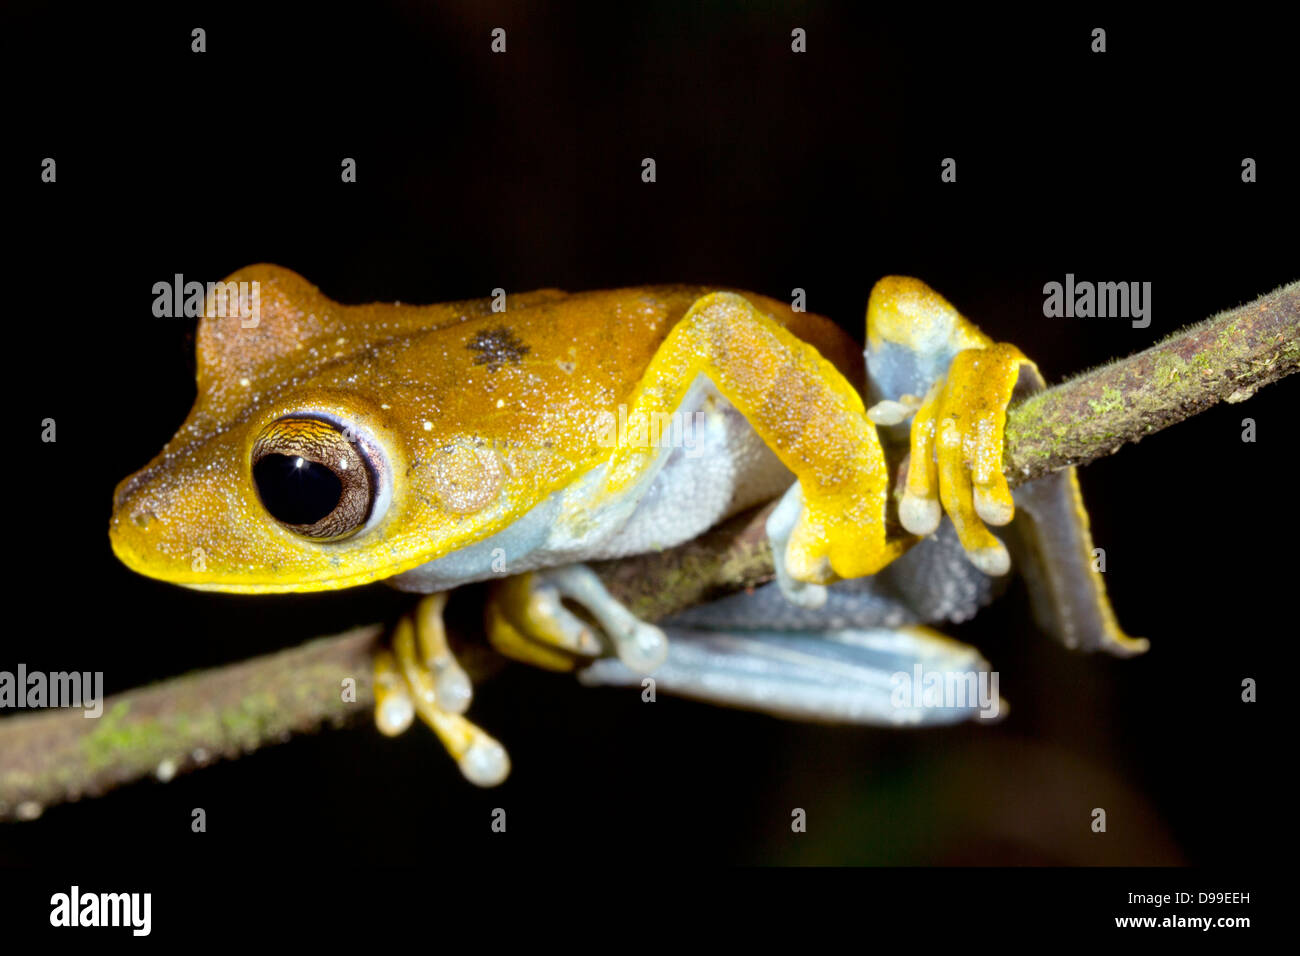 Convict treefrog (Hypsiboas calcaratus), Ecuador Stock Photo